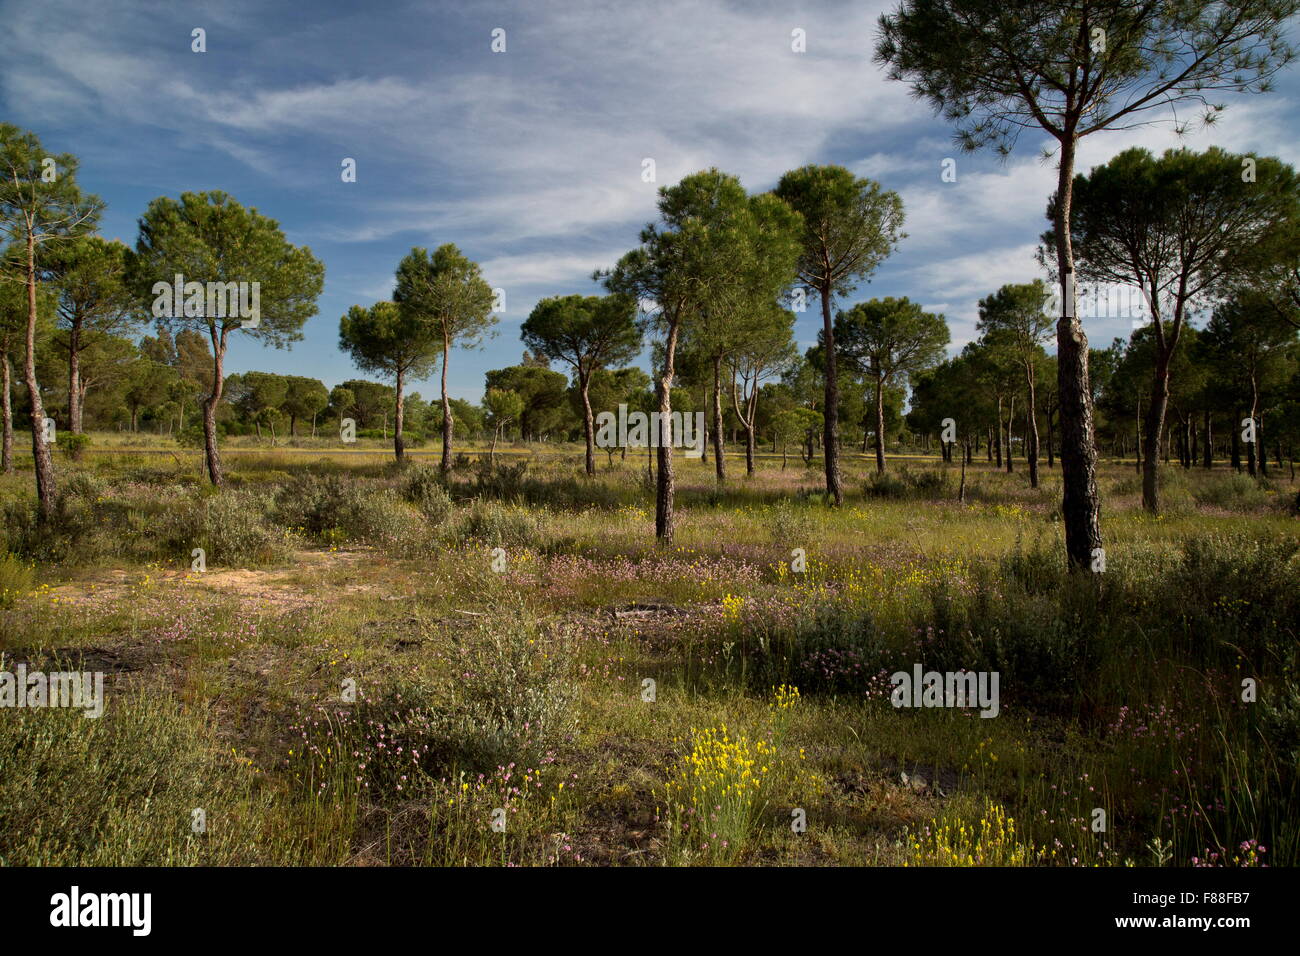 Forêt de pins parasol ouvert sur les dunes de sable, au sud-ouest de l'Espagne. Banque D'Images